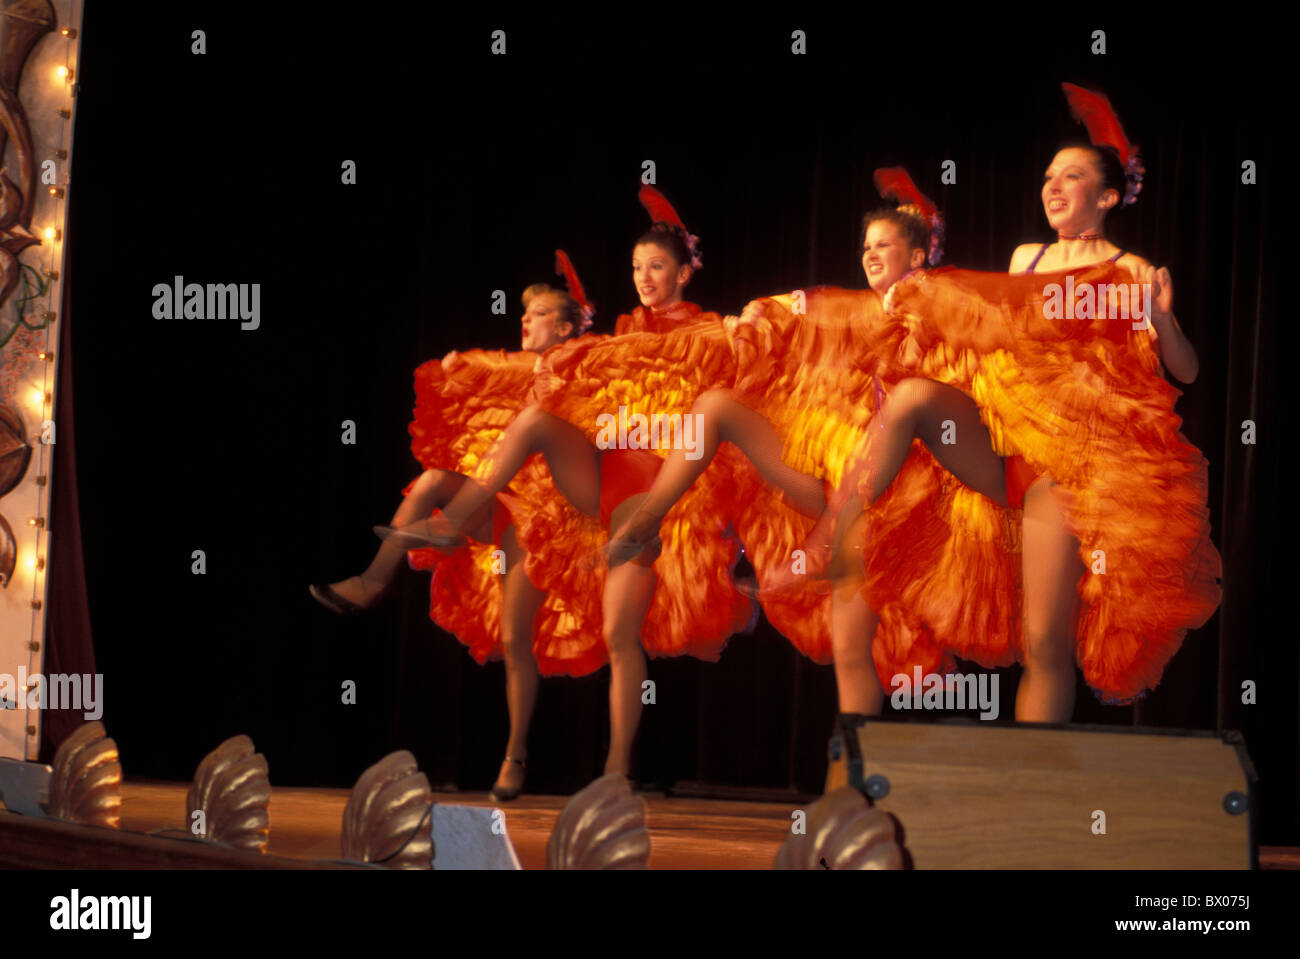 Können können Mädchen Kanada Amerika Kostümen tanzen Tänzer Dawson City keine Modellfreigabe Dia Mond T Stockfoto